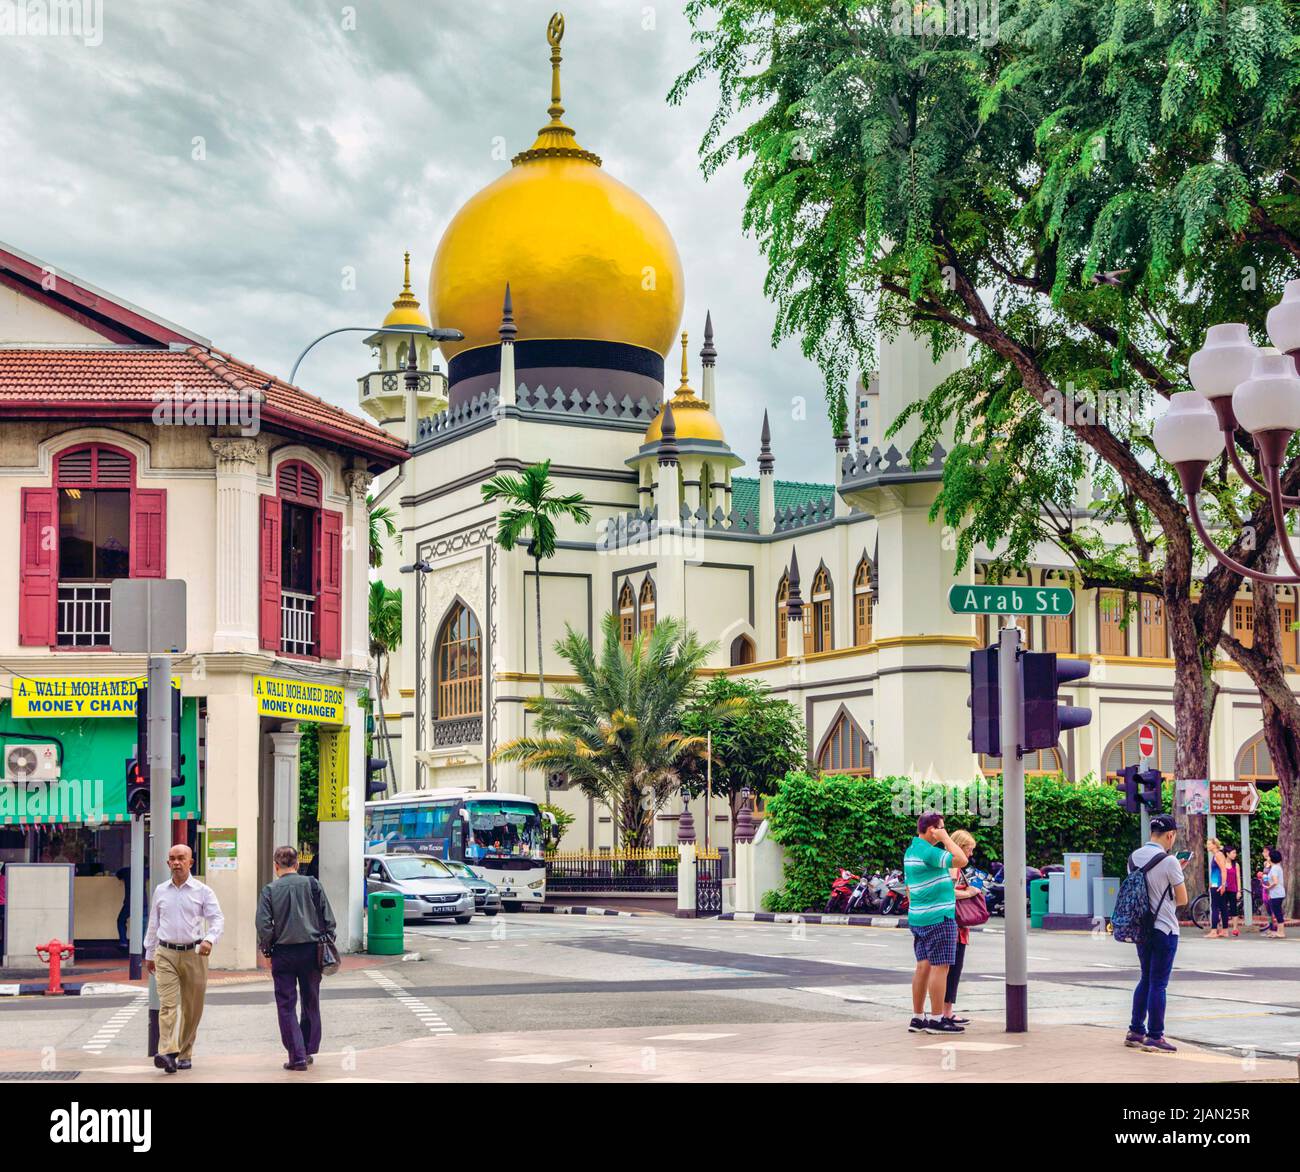 La mosquée du Sultan, ou Sultan Masjid, avec son dôme doré. République de Singapour. La mosquée a été désignée monument national. Banque D'Images